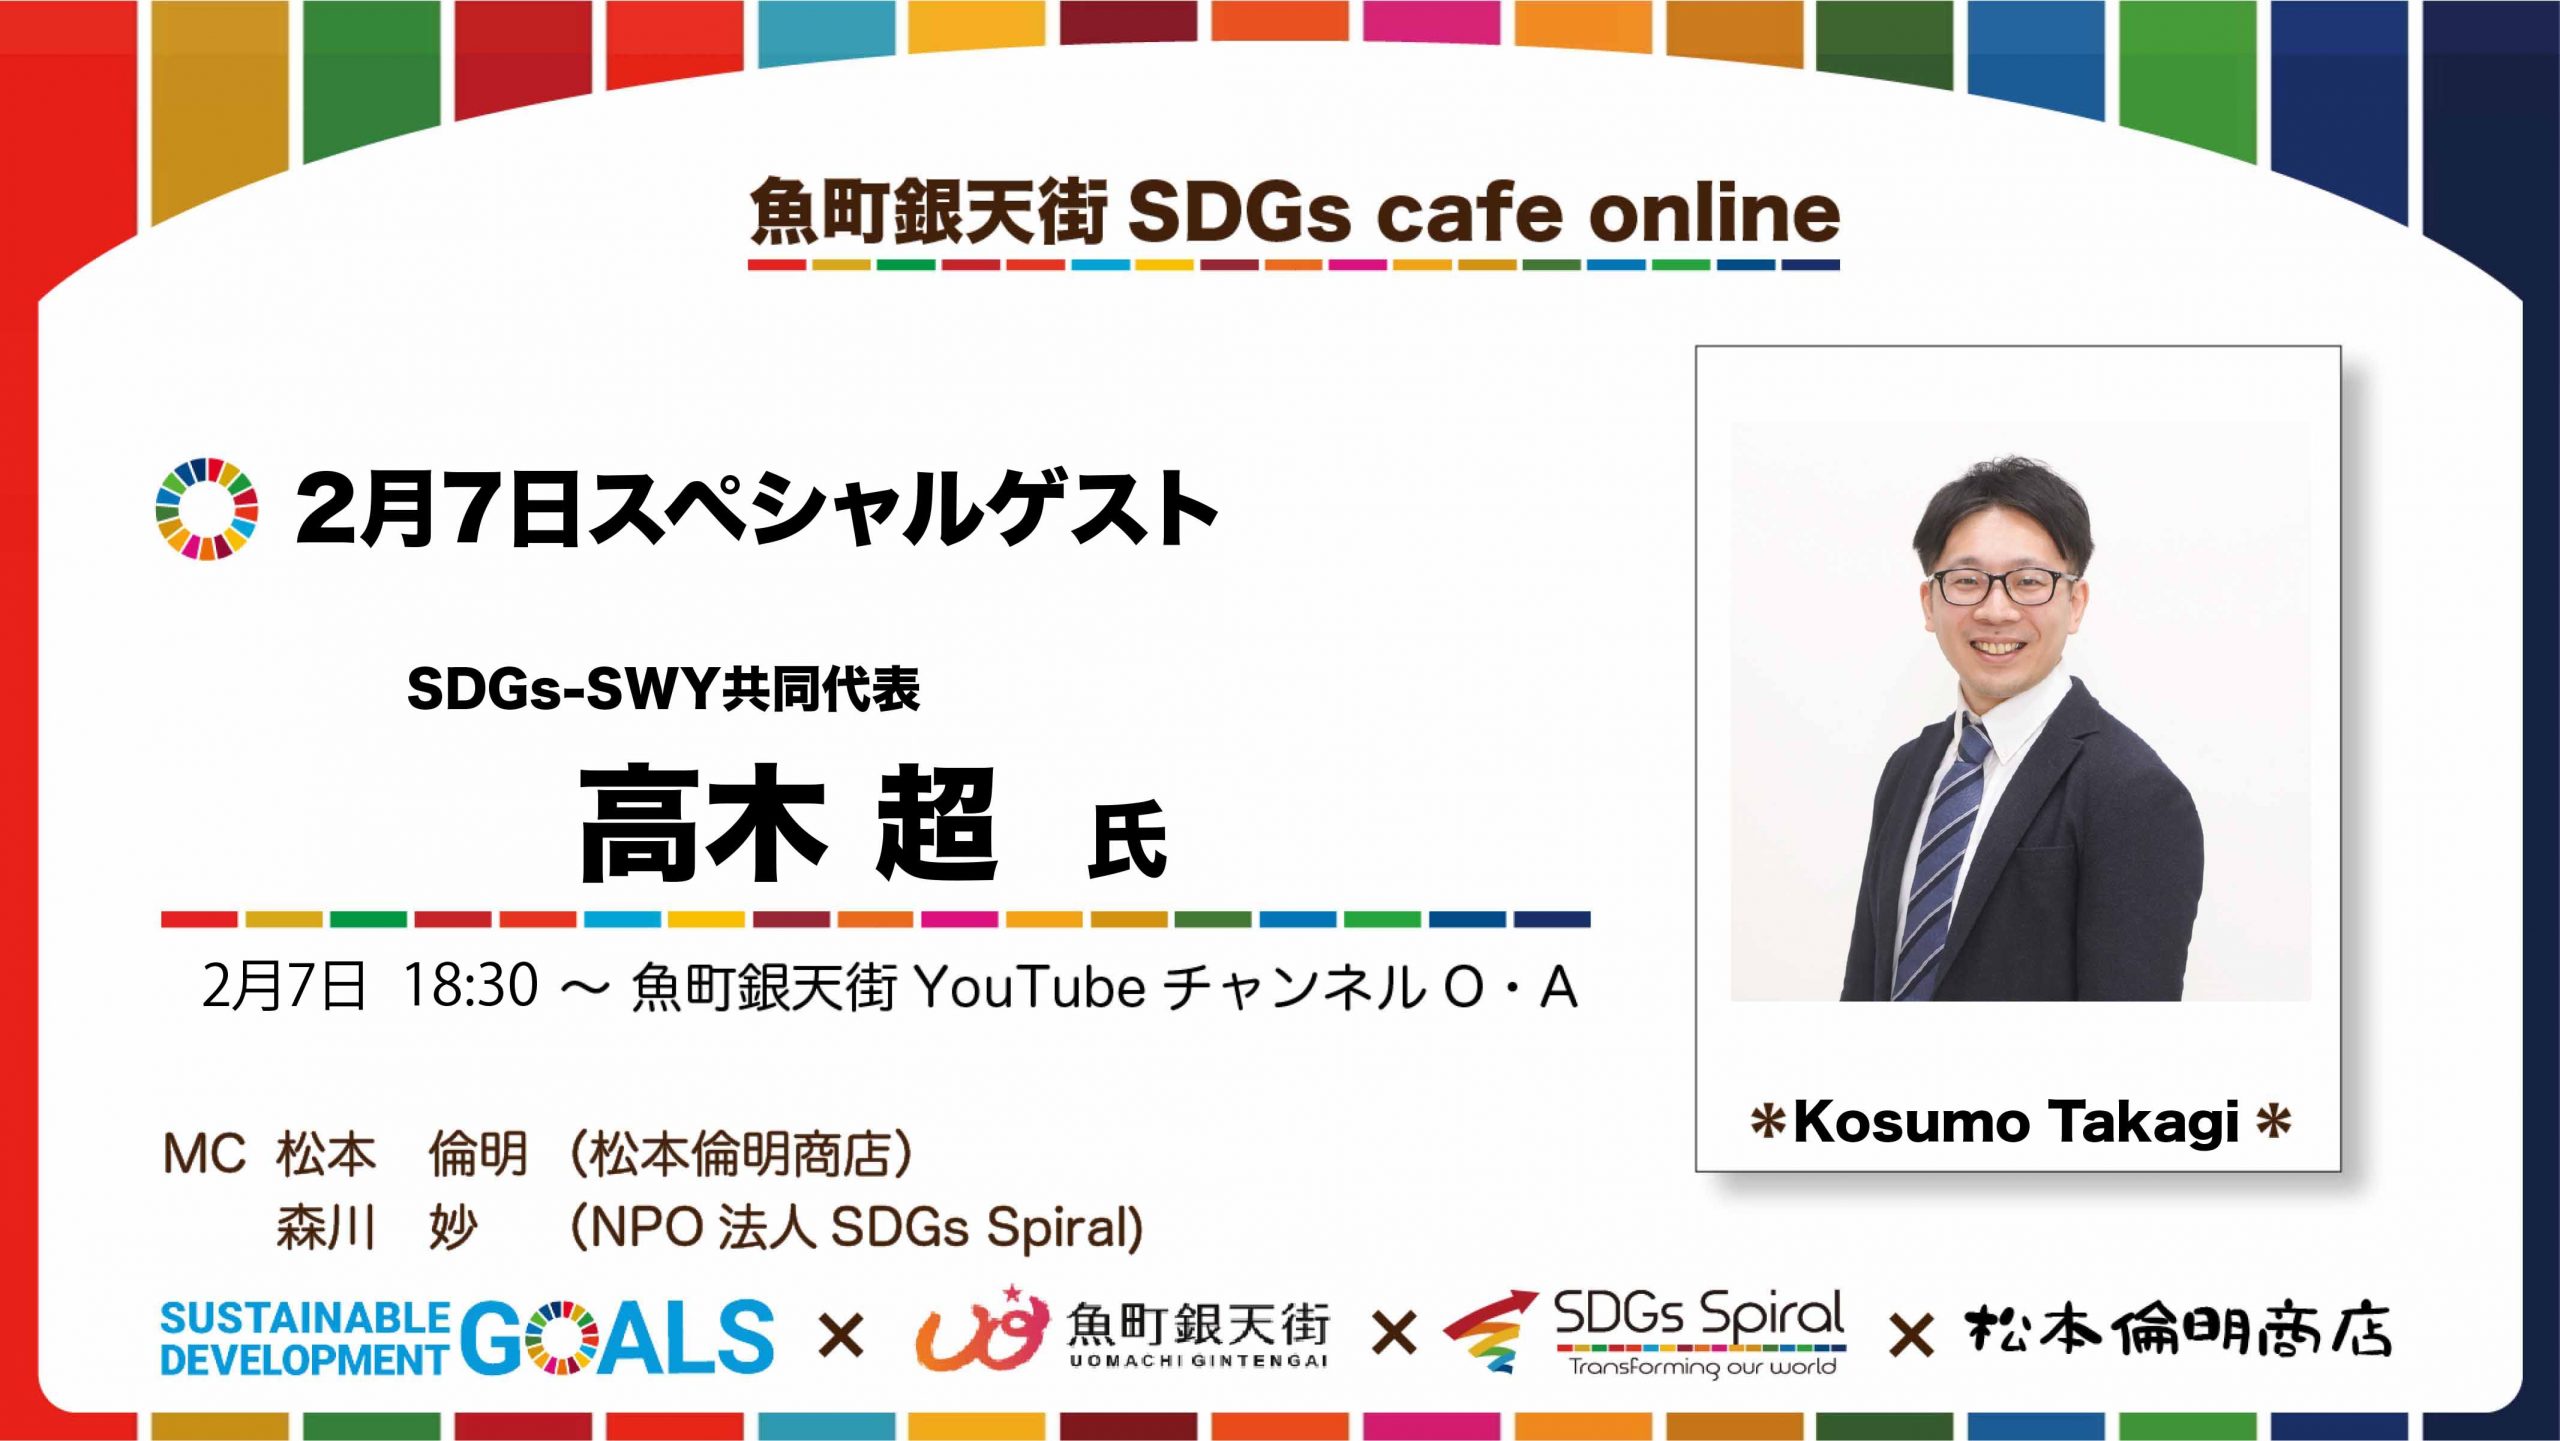 魚町銀天街SDGs cafe live talk DAY5 歌川たいじさん